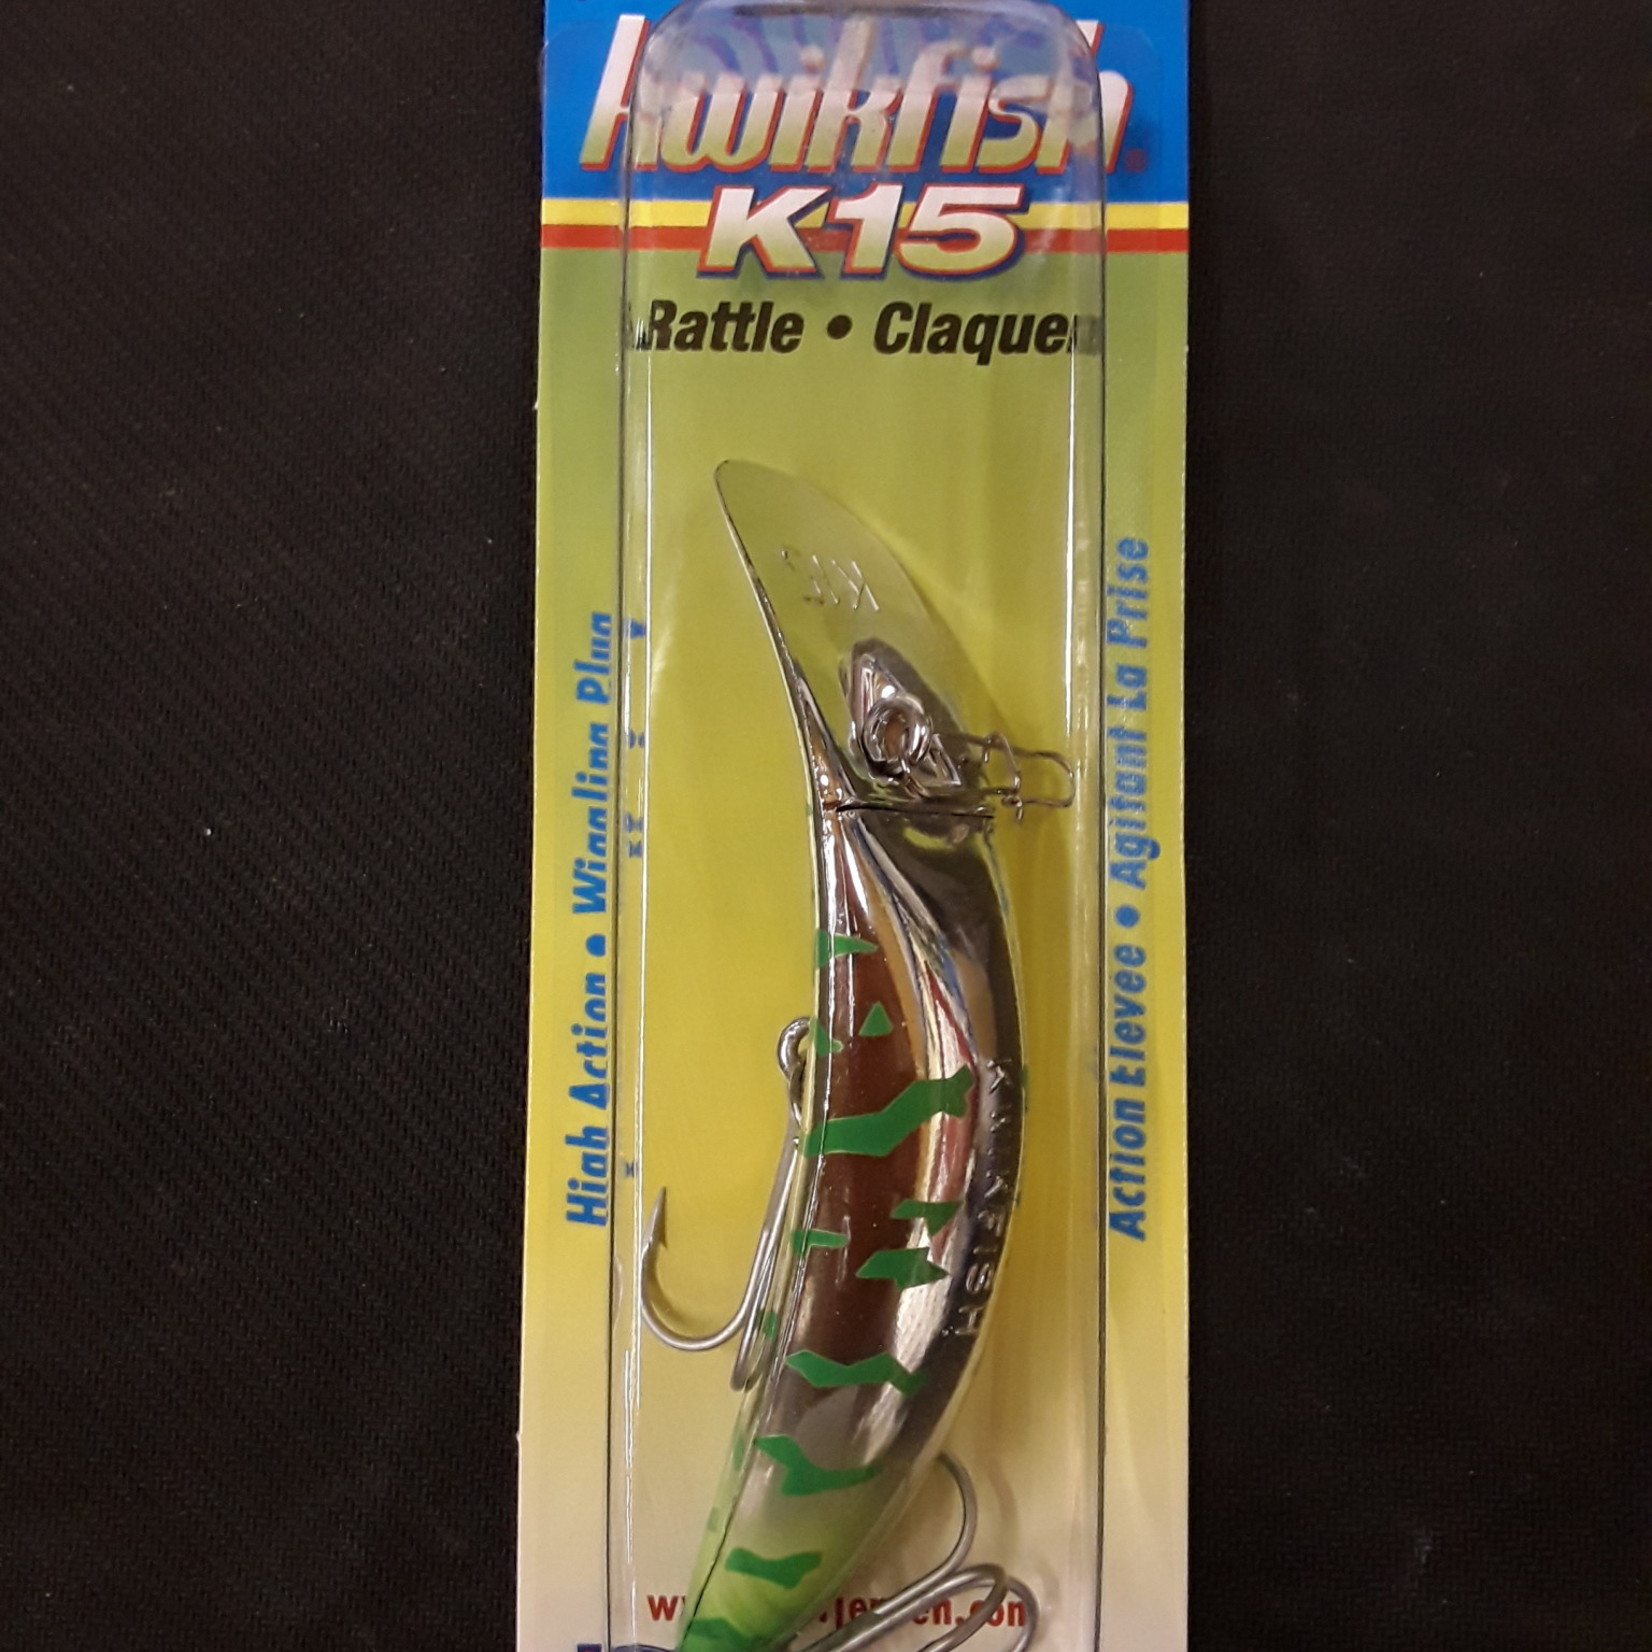 Luhr-Jensen Kwikfish K15 Rattle